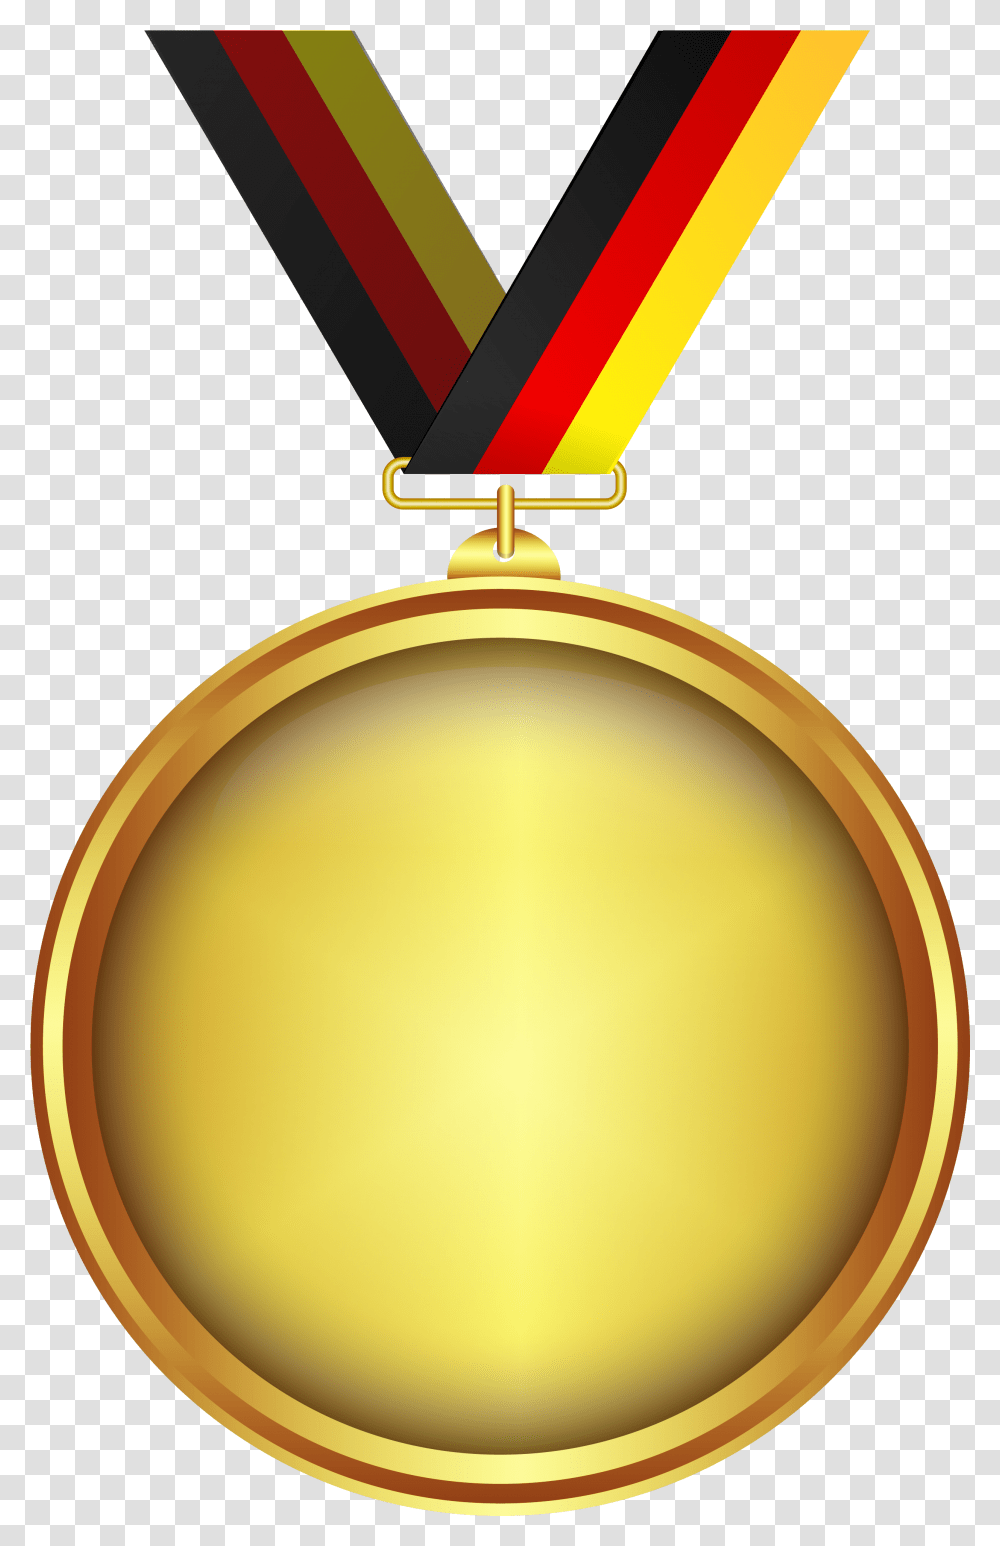 Gold Medal Image Medal, Lamp, Trophy Transparent Png